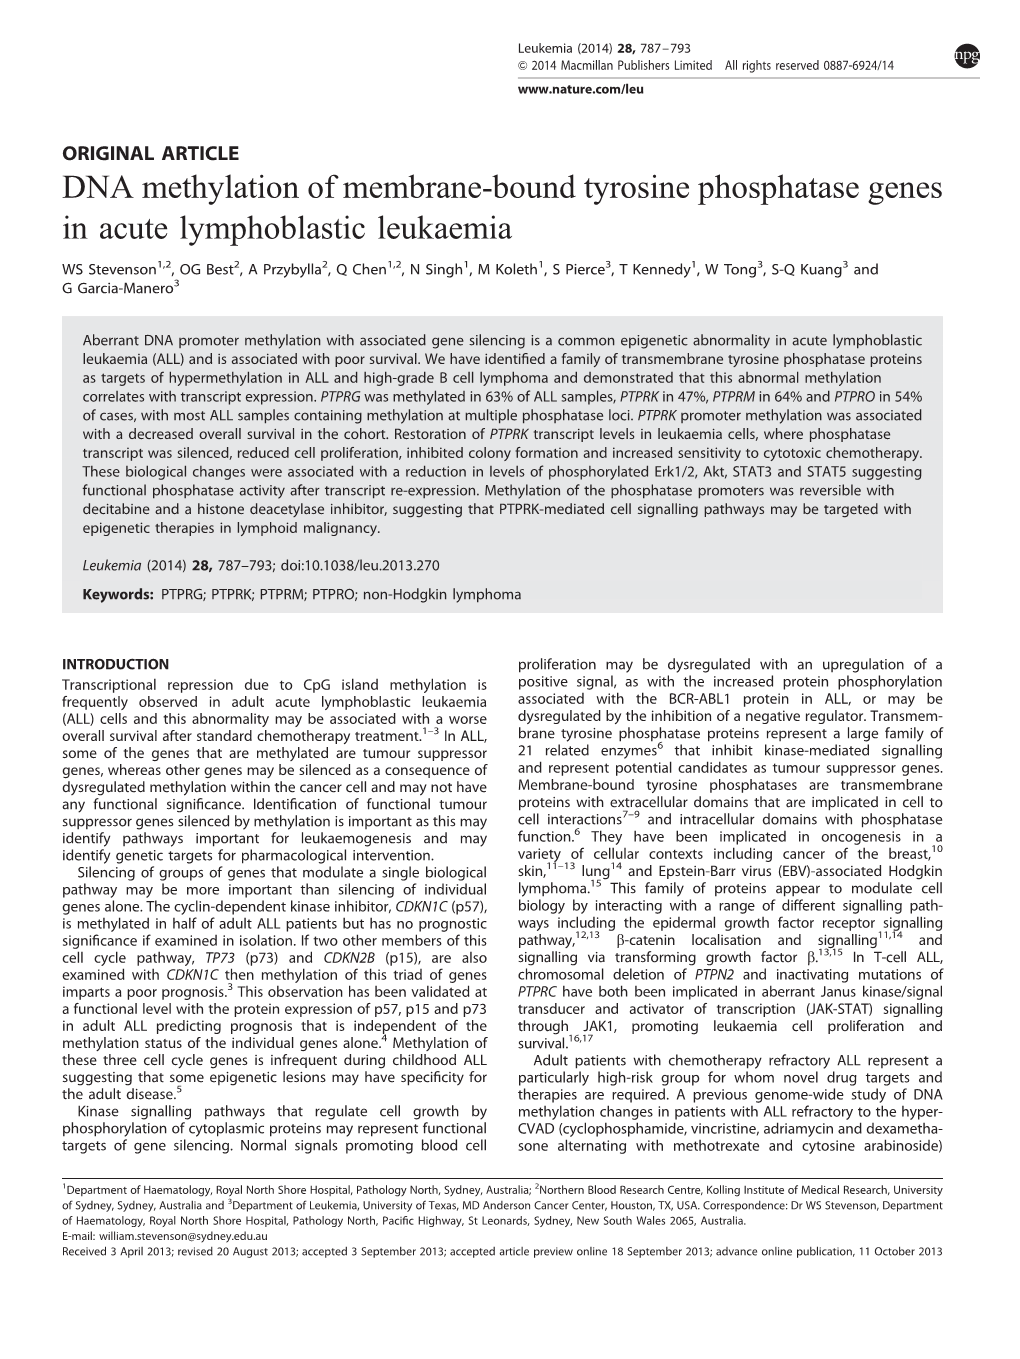 DNA Methylation of Membrane-Bound Tyrosine Phosphatase Genes in Acute Lymphoblastic Leukaemia